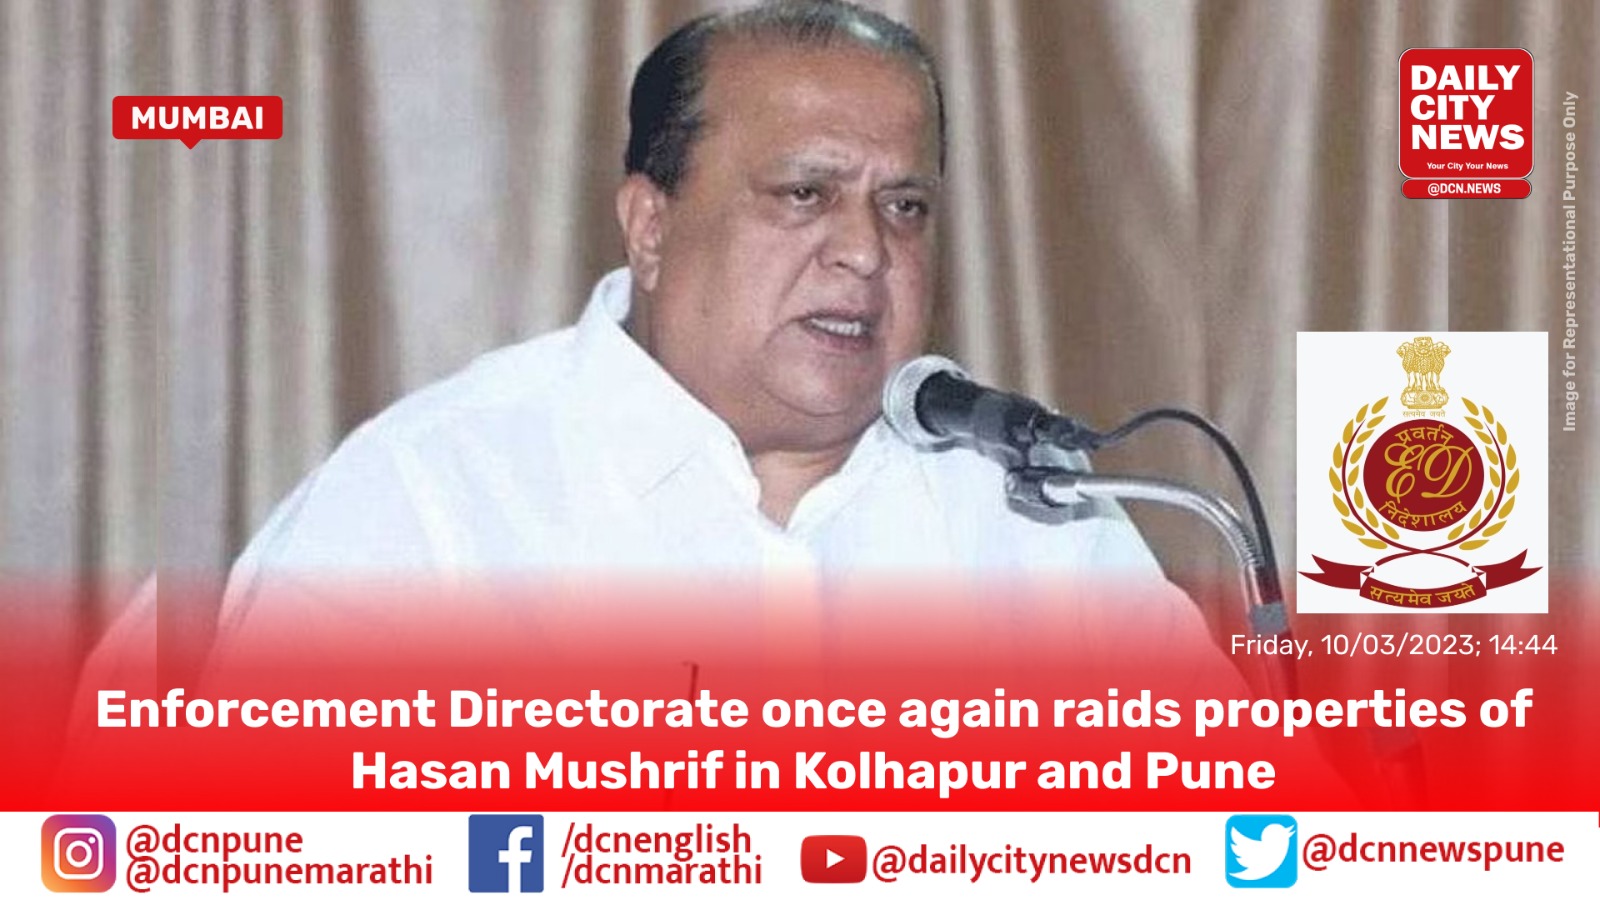 Enforcement Directorate once again raids properties of Hasan Mushrif in Kolhapur and Pune